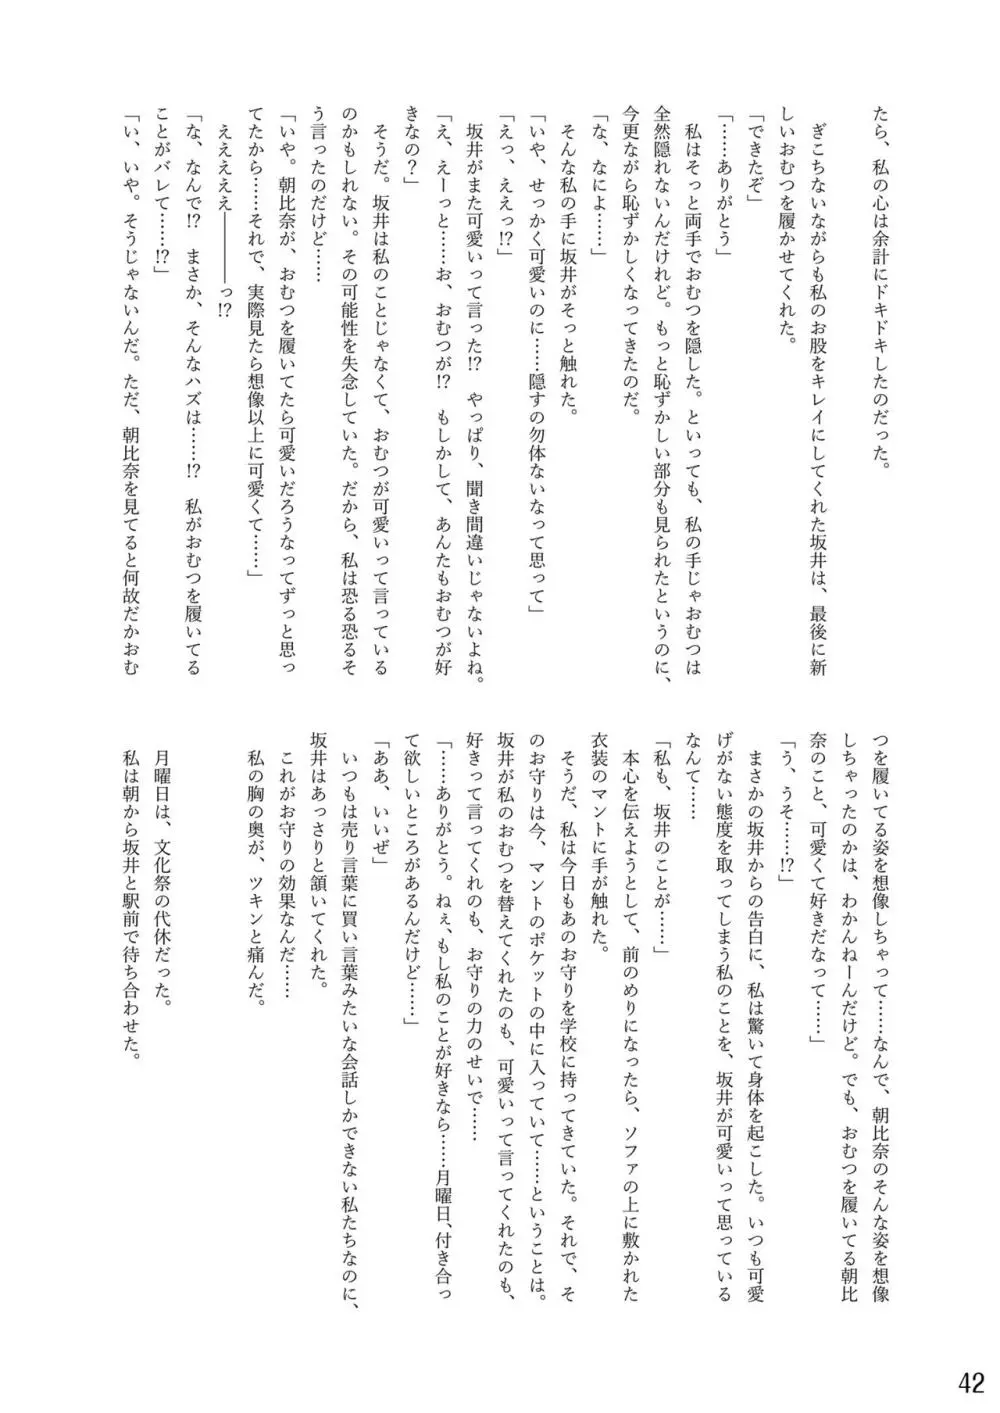 おむ☆フェス8開催記念合同誌「おむつっ娘PARTY!9」 42ページ